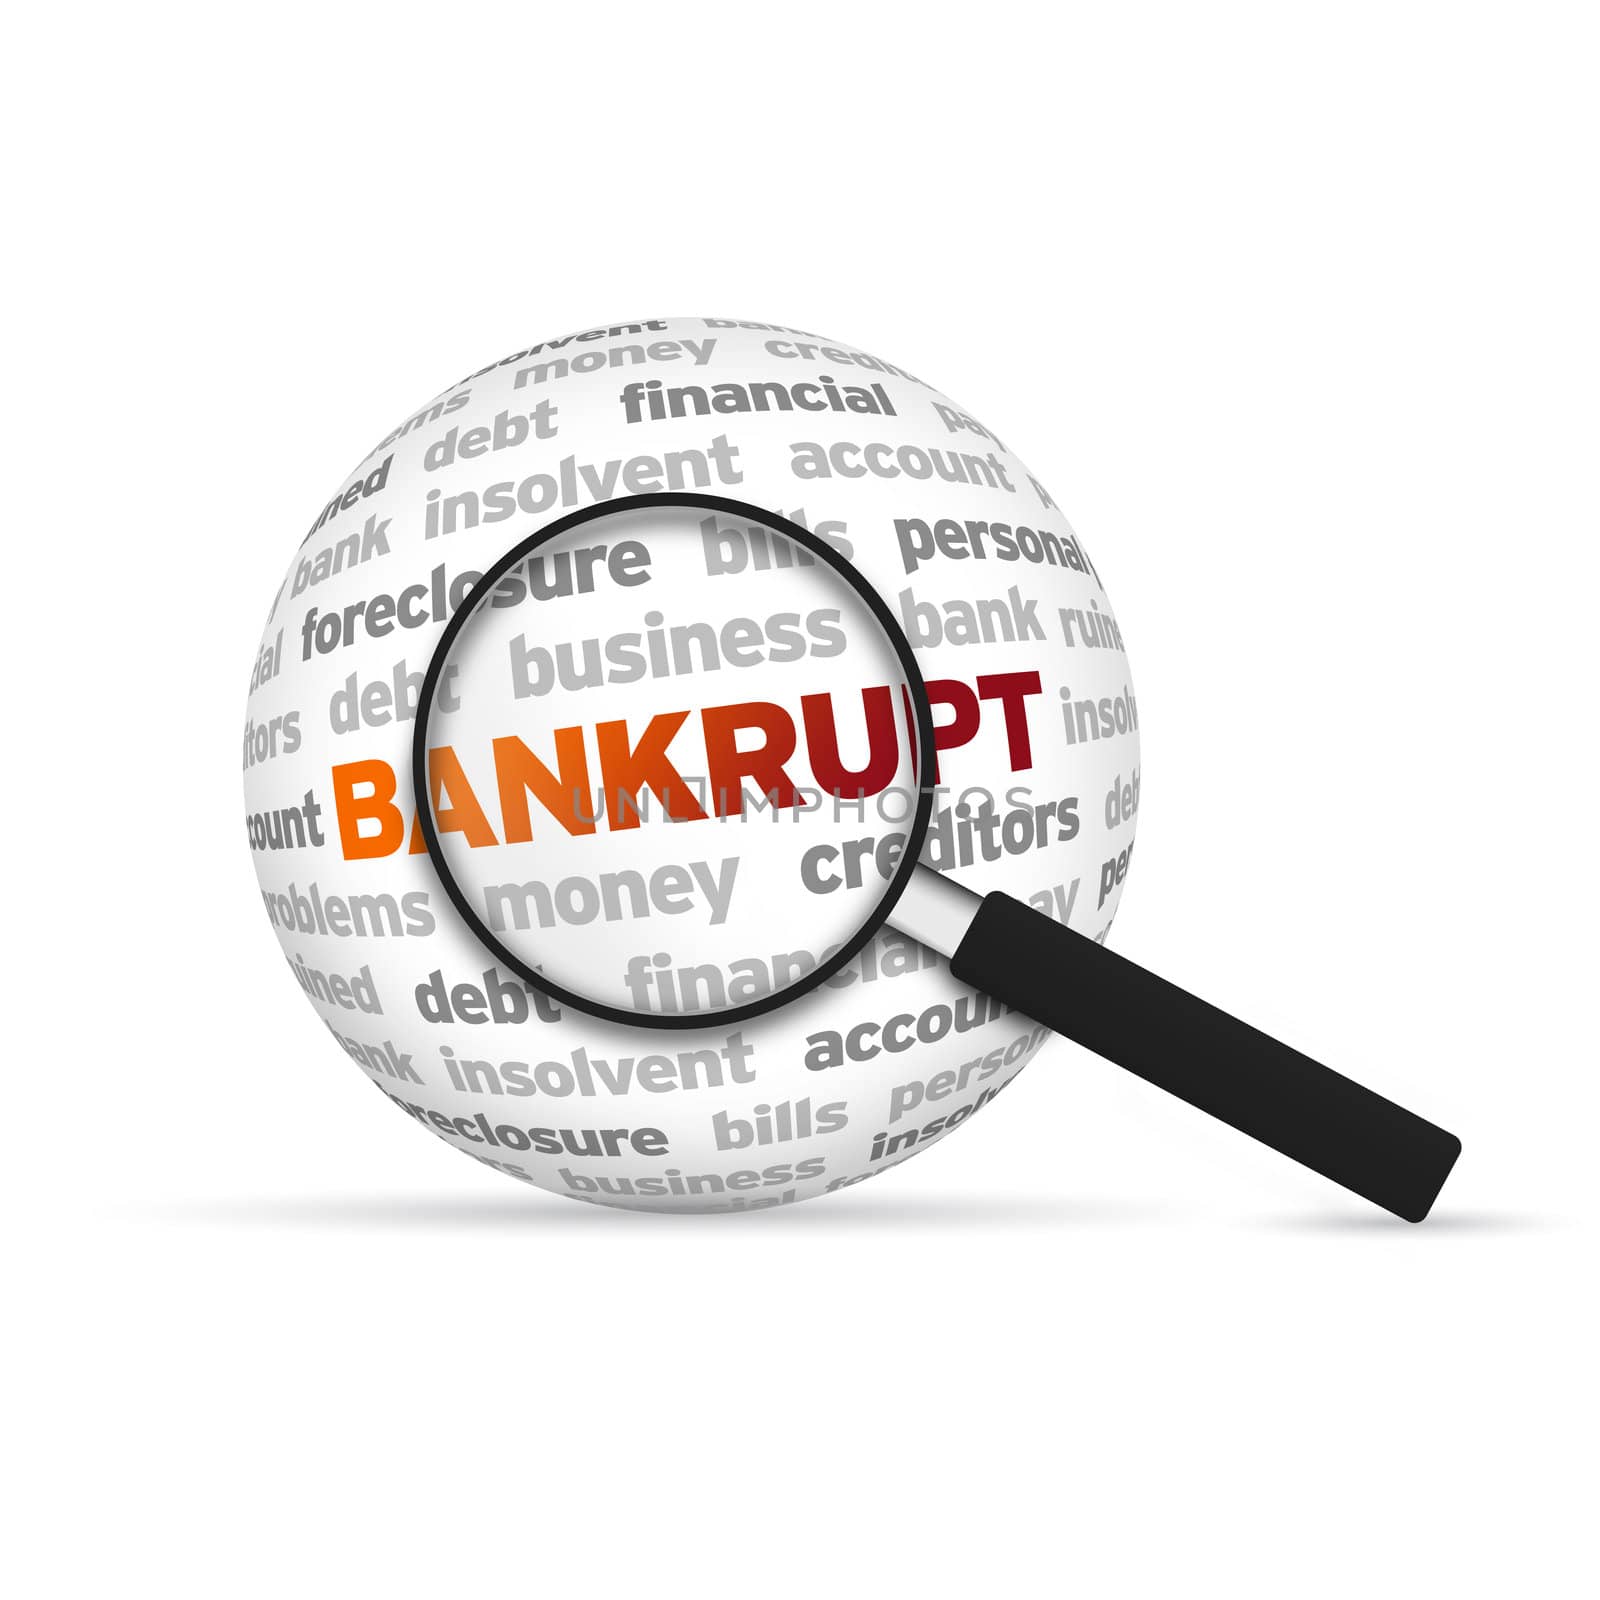 Bankrupt by kbuntu